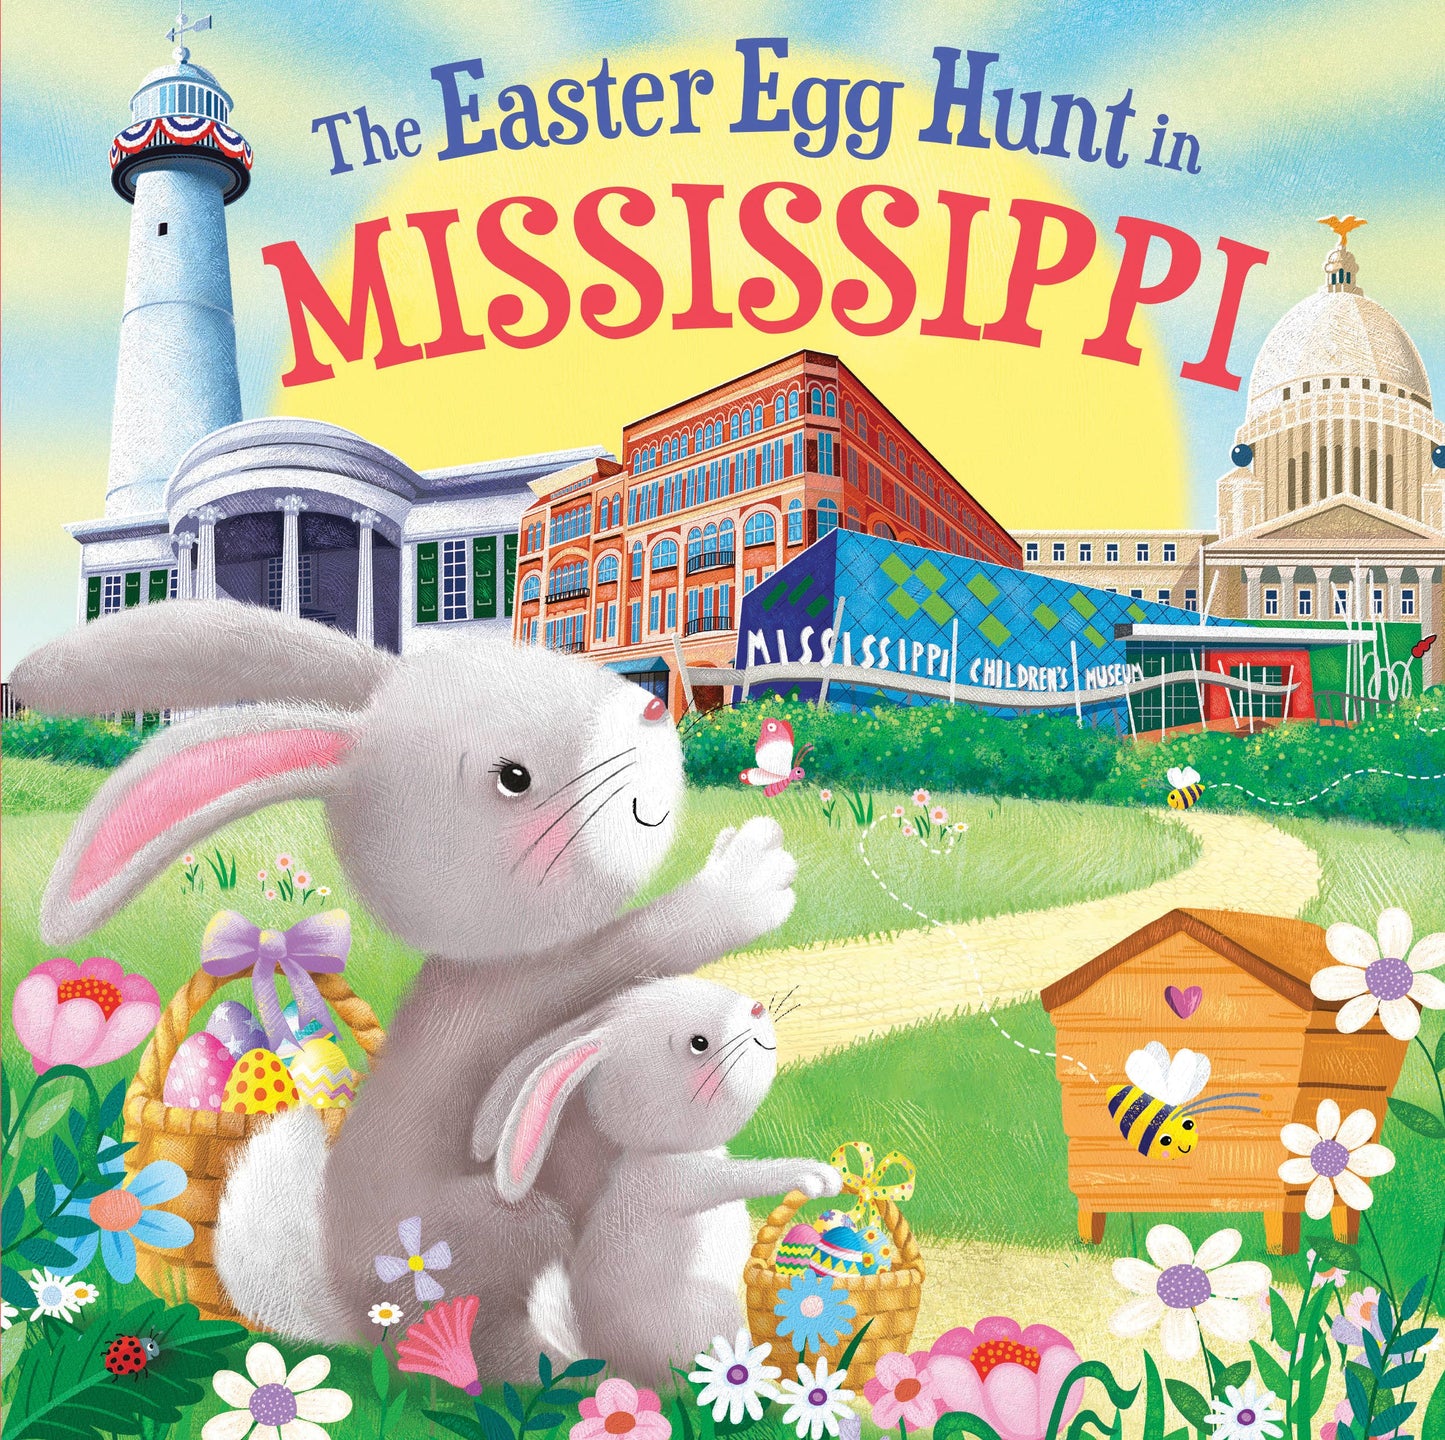 The Easter Egg Hunt in Mississippi